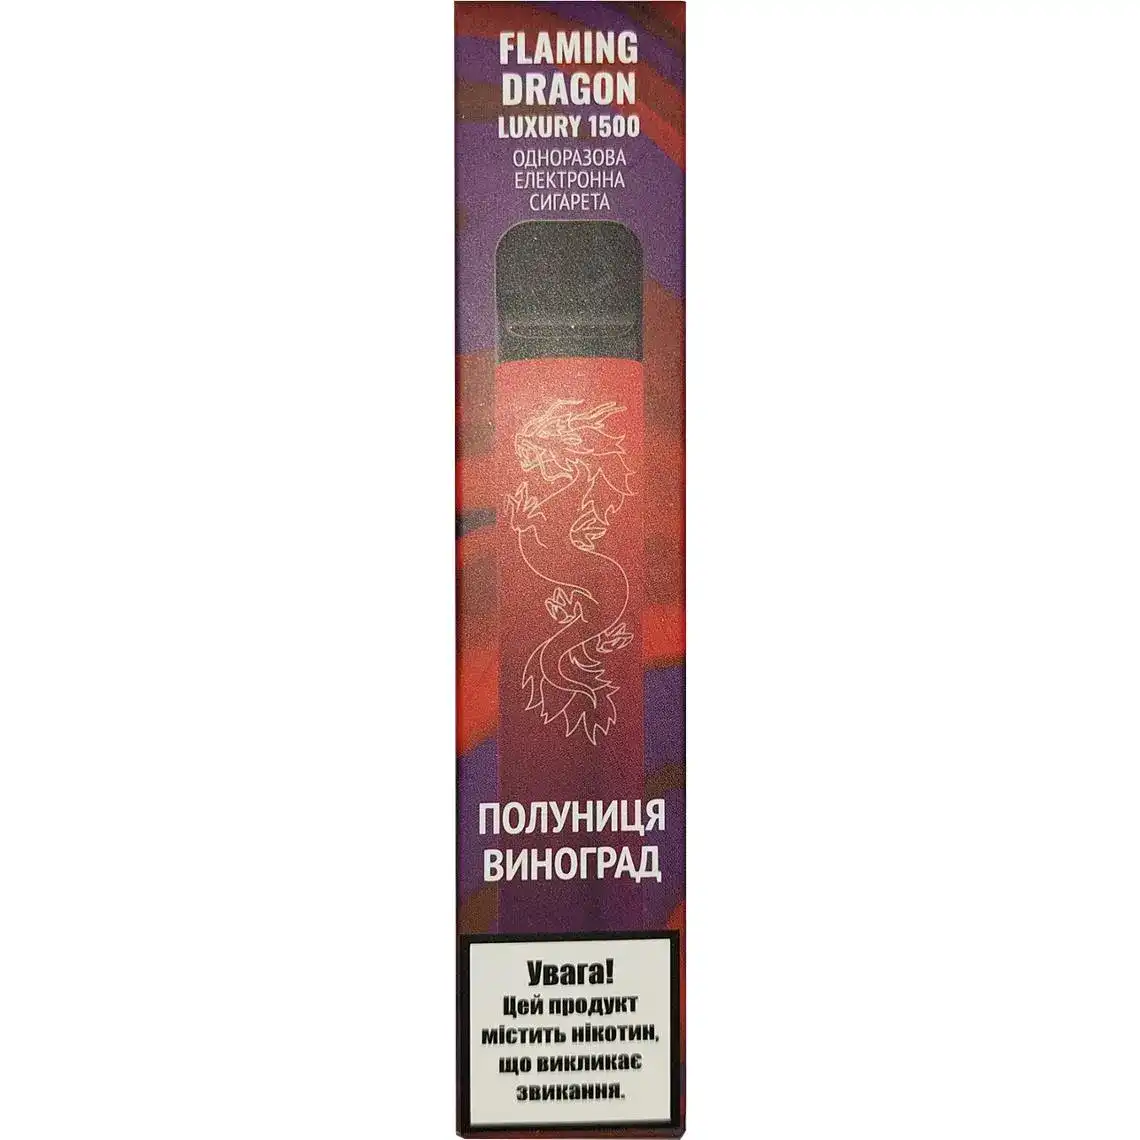 Одноразова електронна сигарета Flaming Dragon Полуниця виноград 5% 1500 затяжек